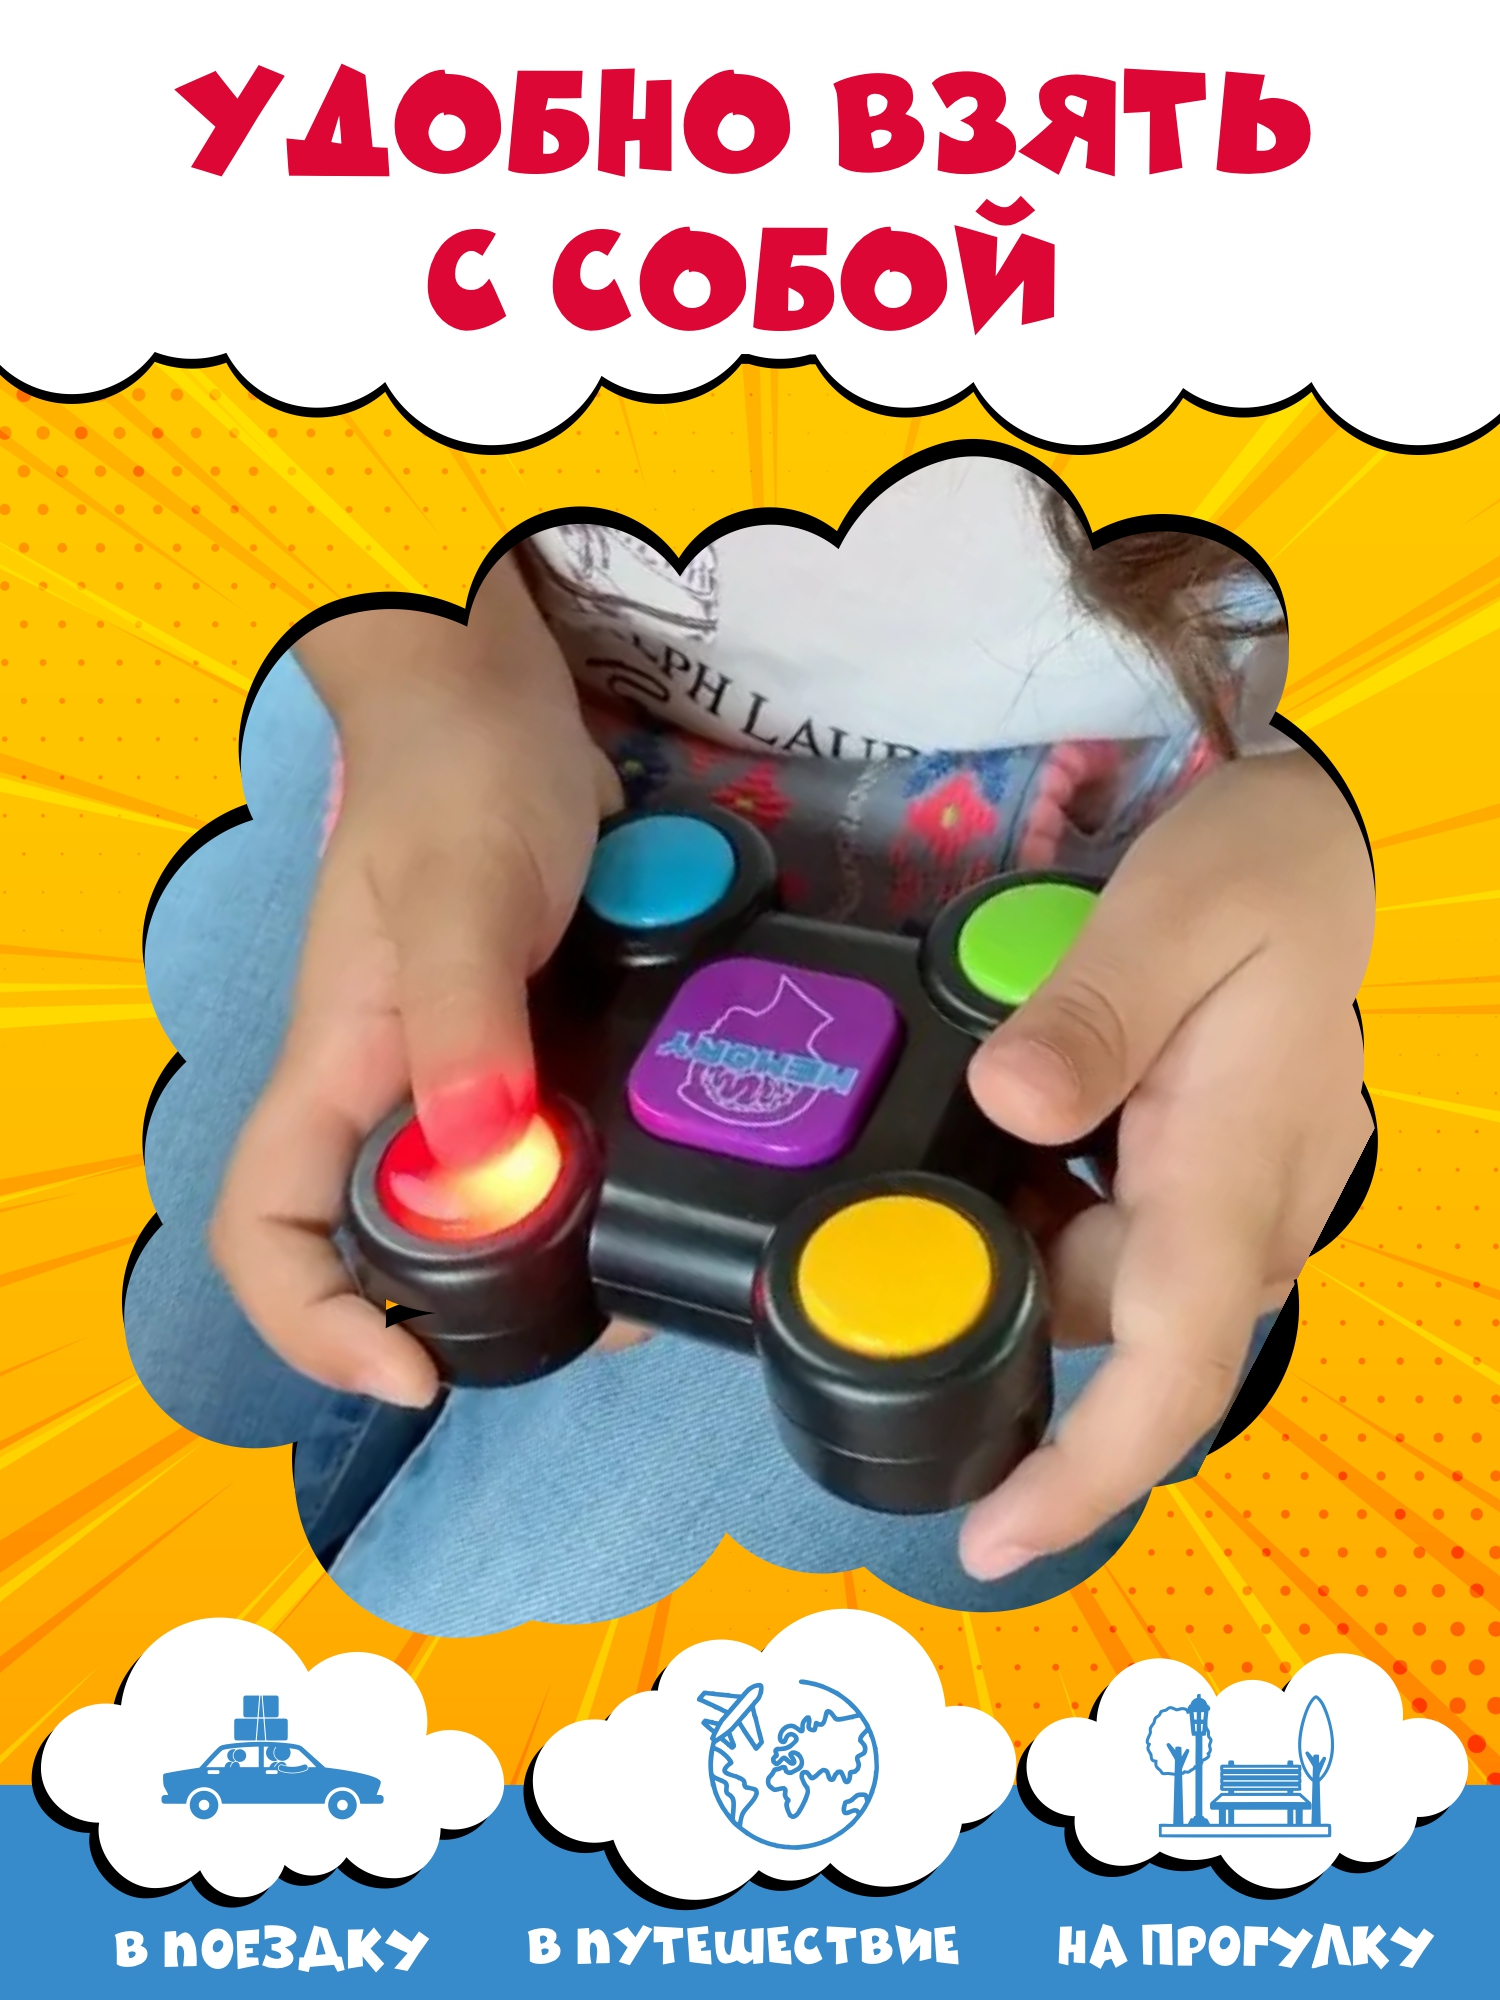 Развивающая игрушка NR-Toys антистресс головоломка электронный мемори для детей и взрослых - фото 4